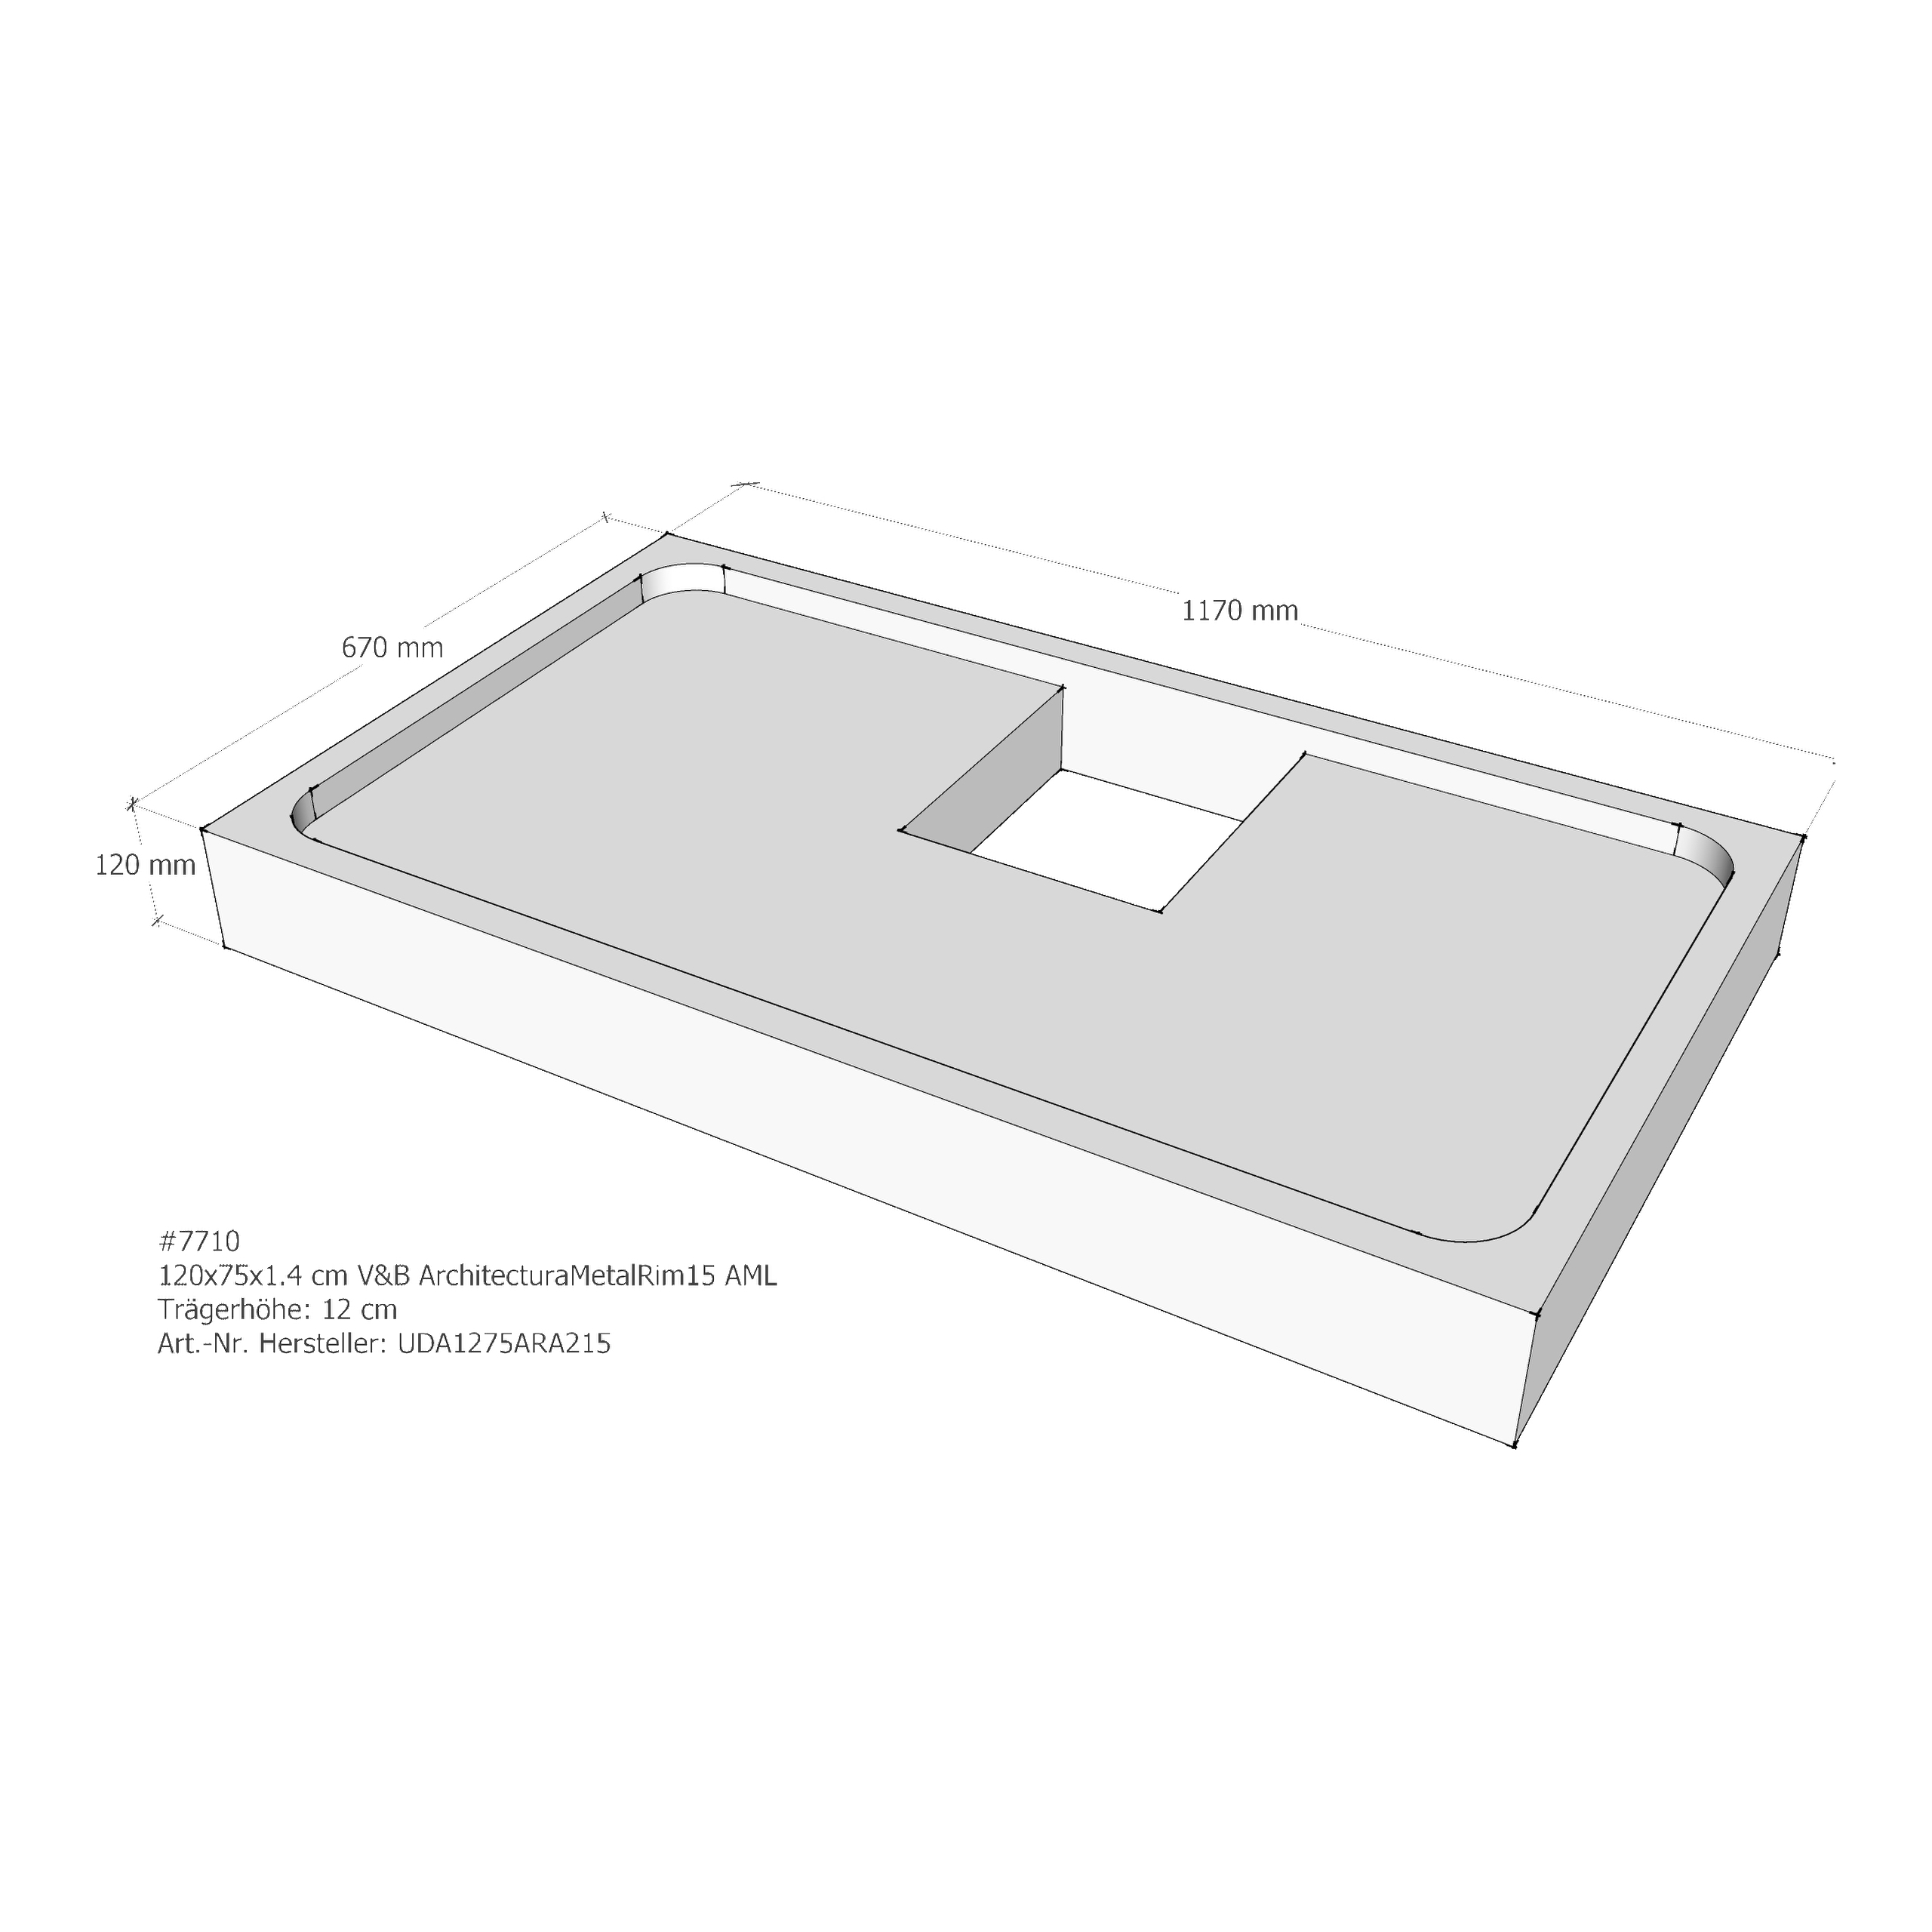 Duschwannenträger für Villeroy & Boch Architectura MetalRim 120 × 75 × 1,4 cm